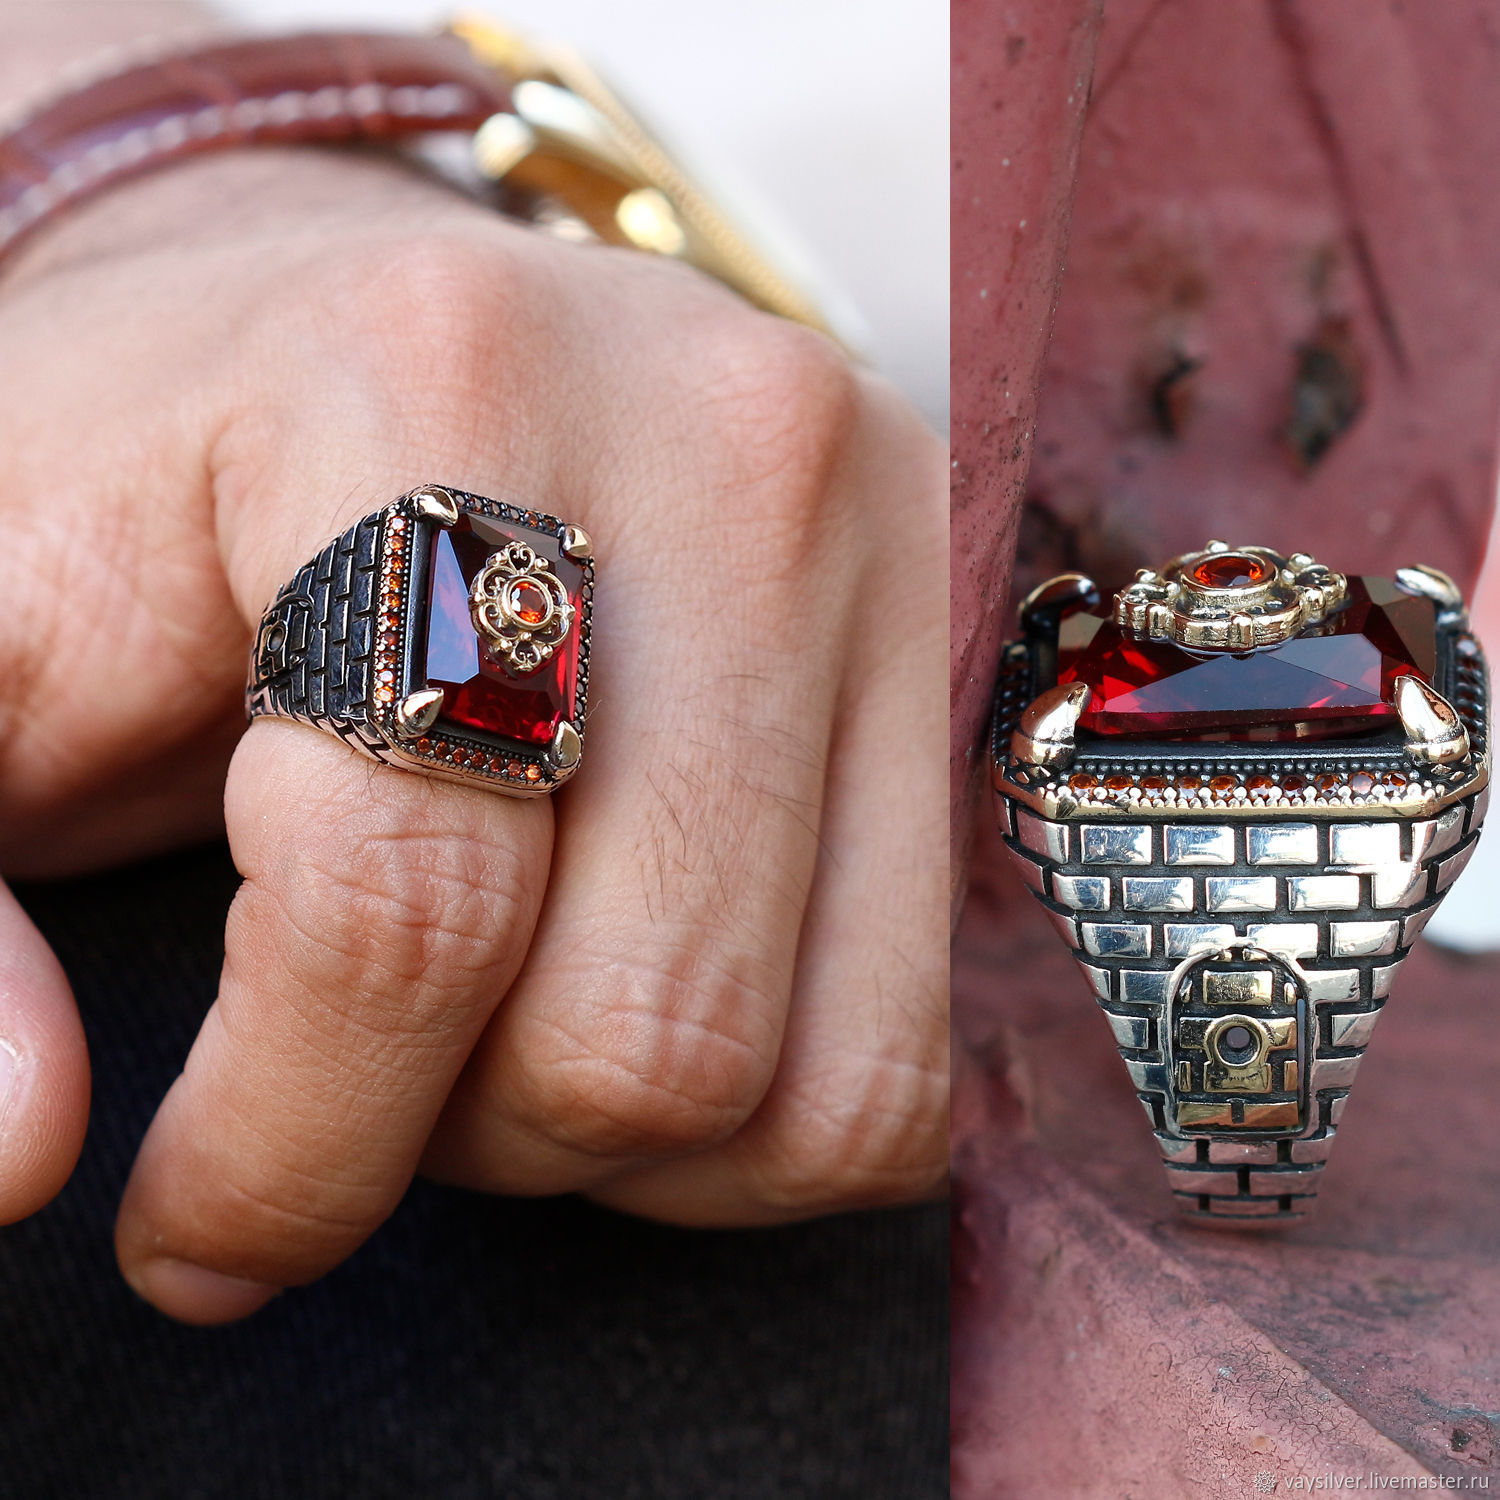  Инкрустация серебра кольцо серебряное с квадратным камнем, Перстень, Стамбул,  Фото №1